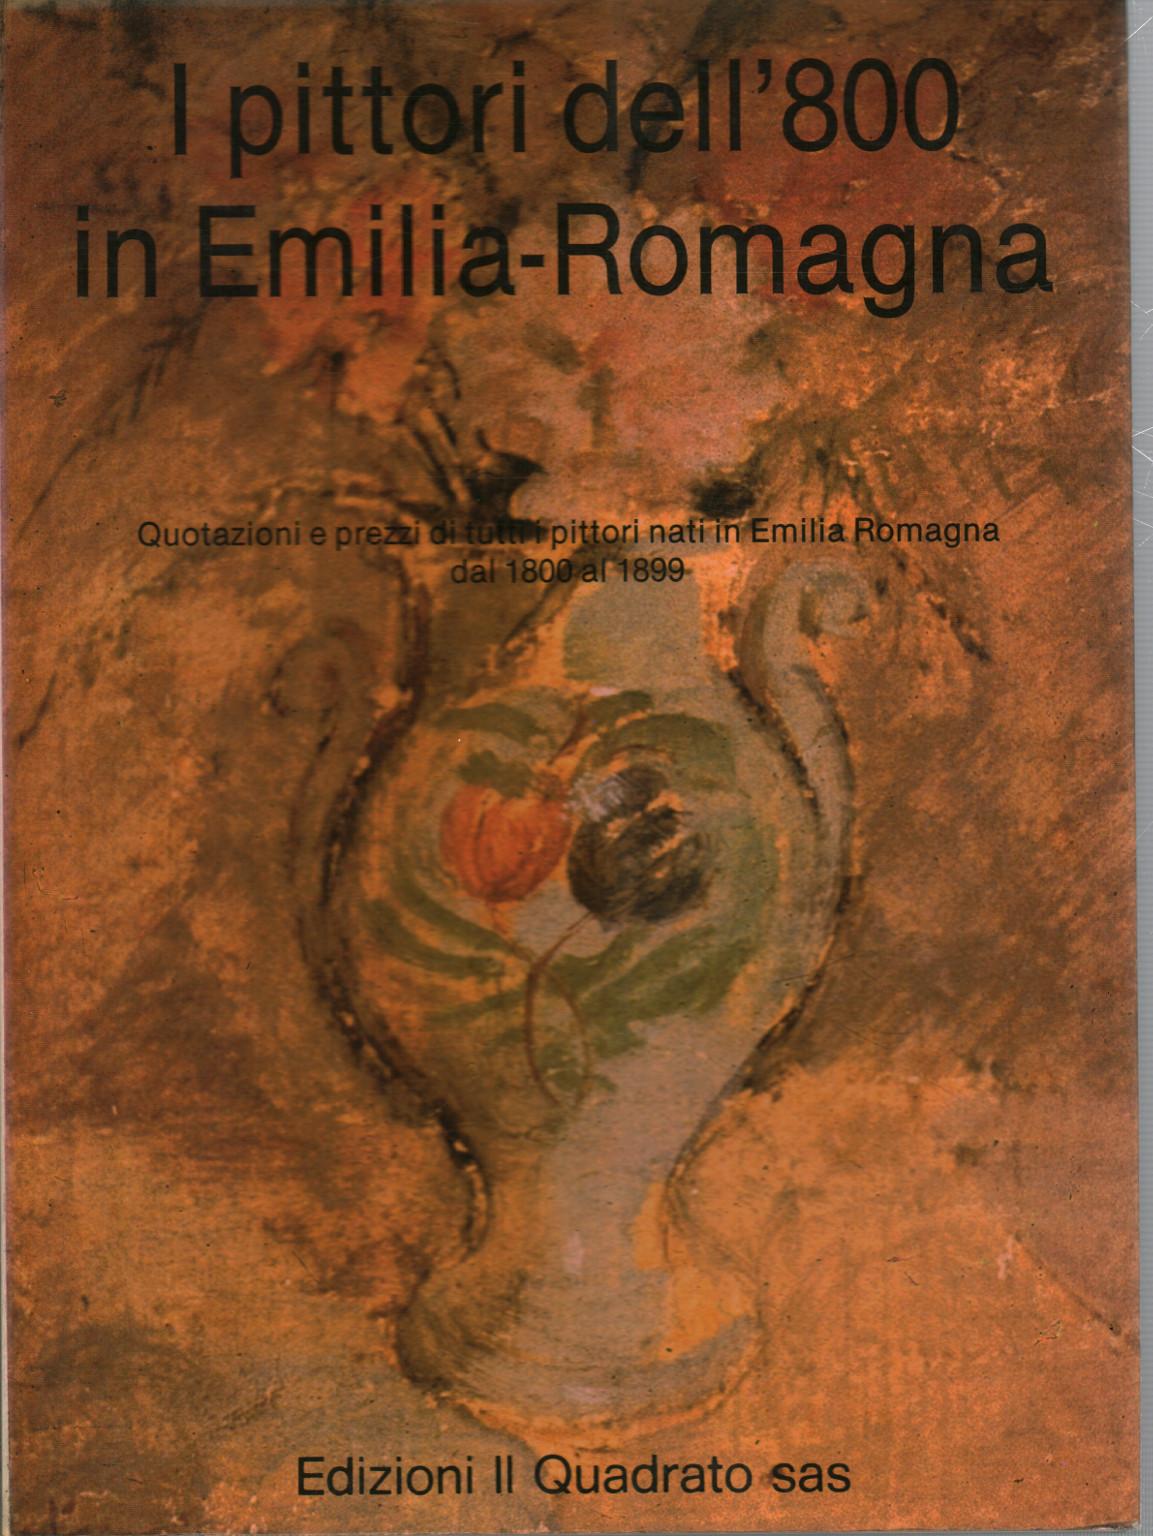 I pittori dell'800 in Emilia-Romagna, s.a.